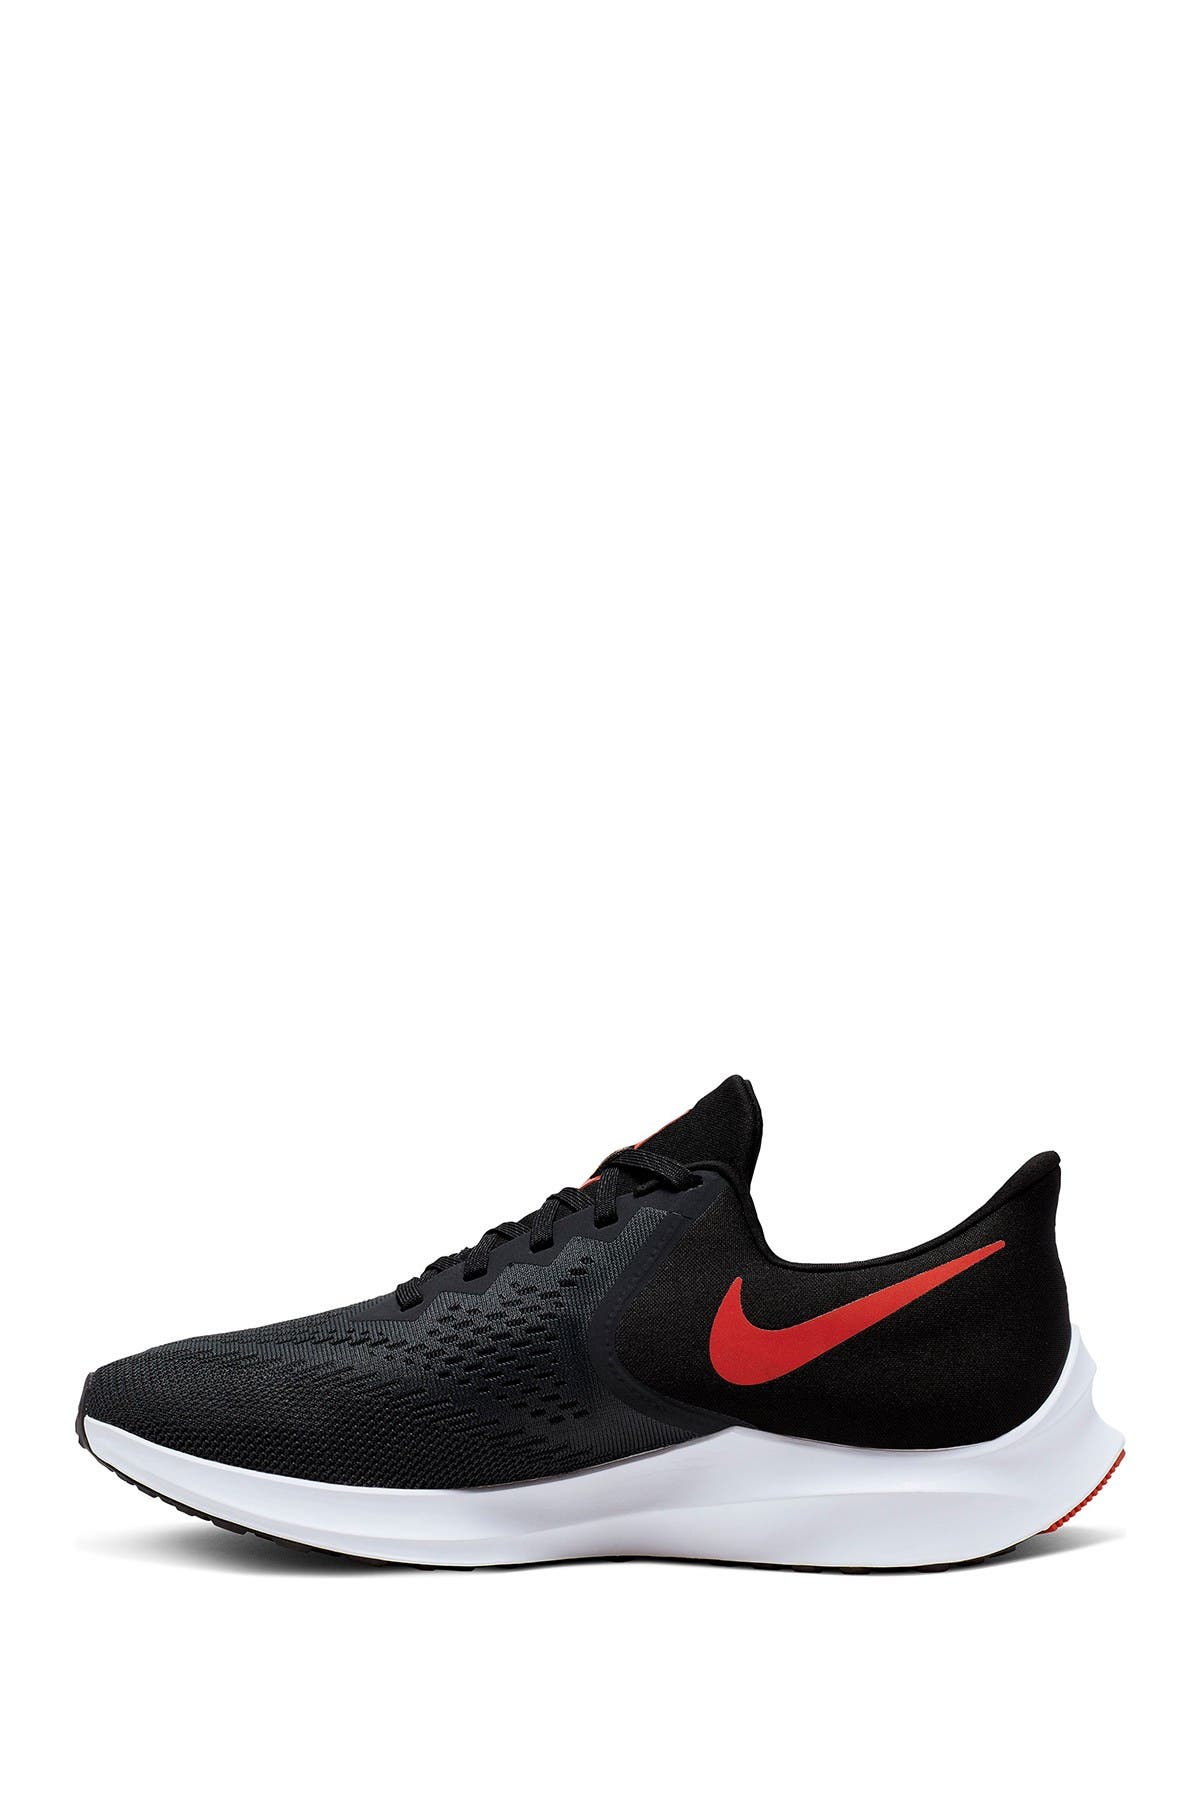 Nike | Air Zoom Winflo 6 Running Shoe 